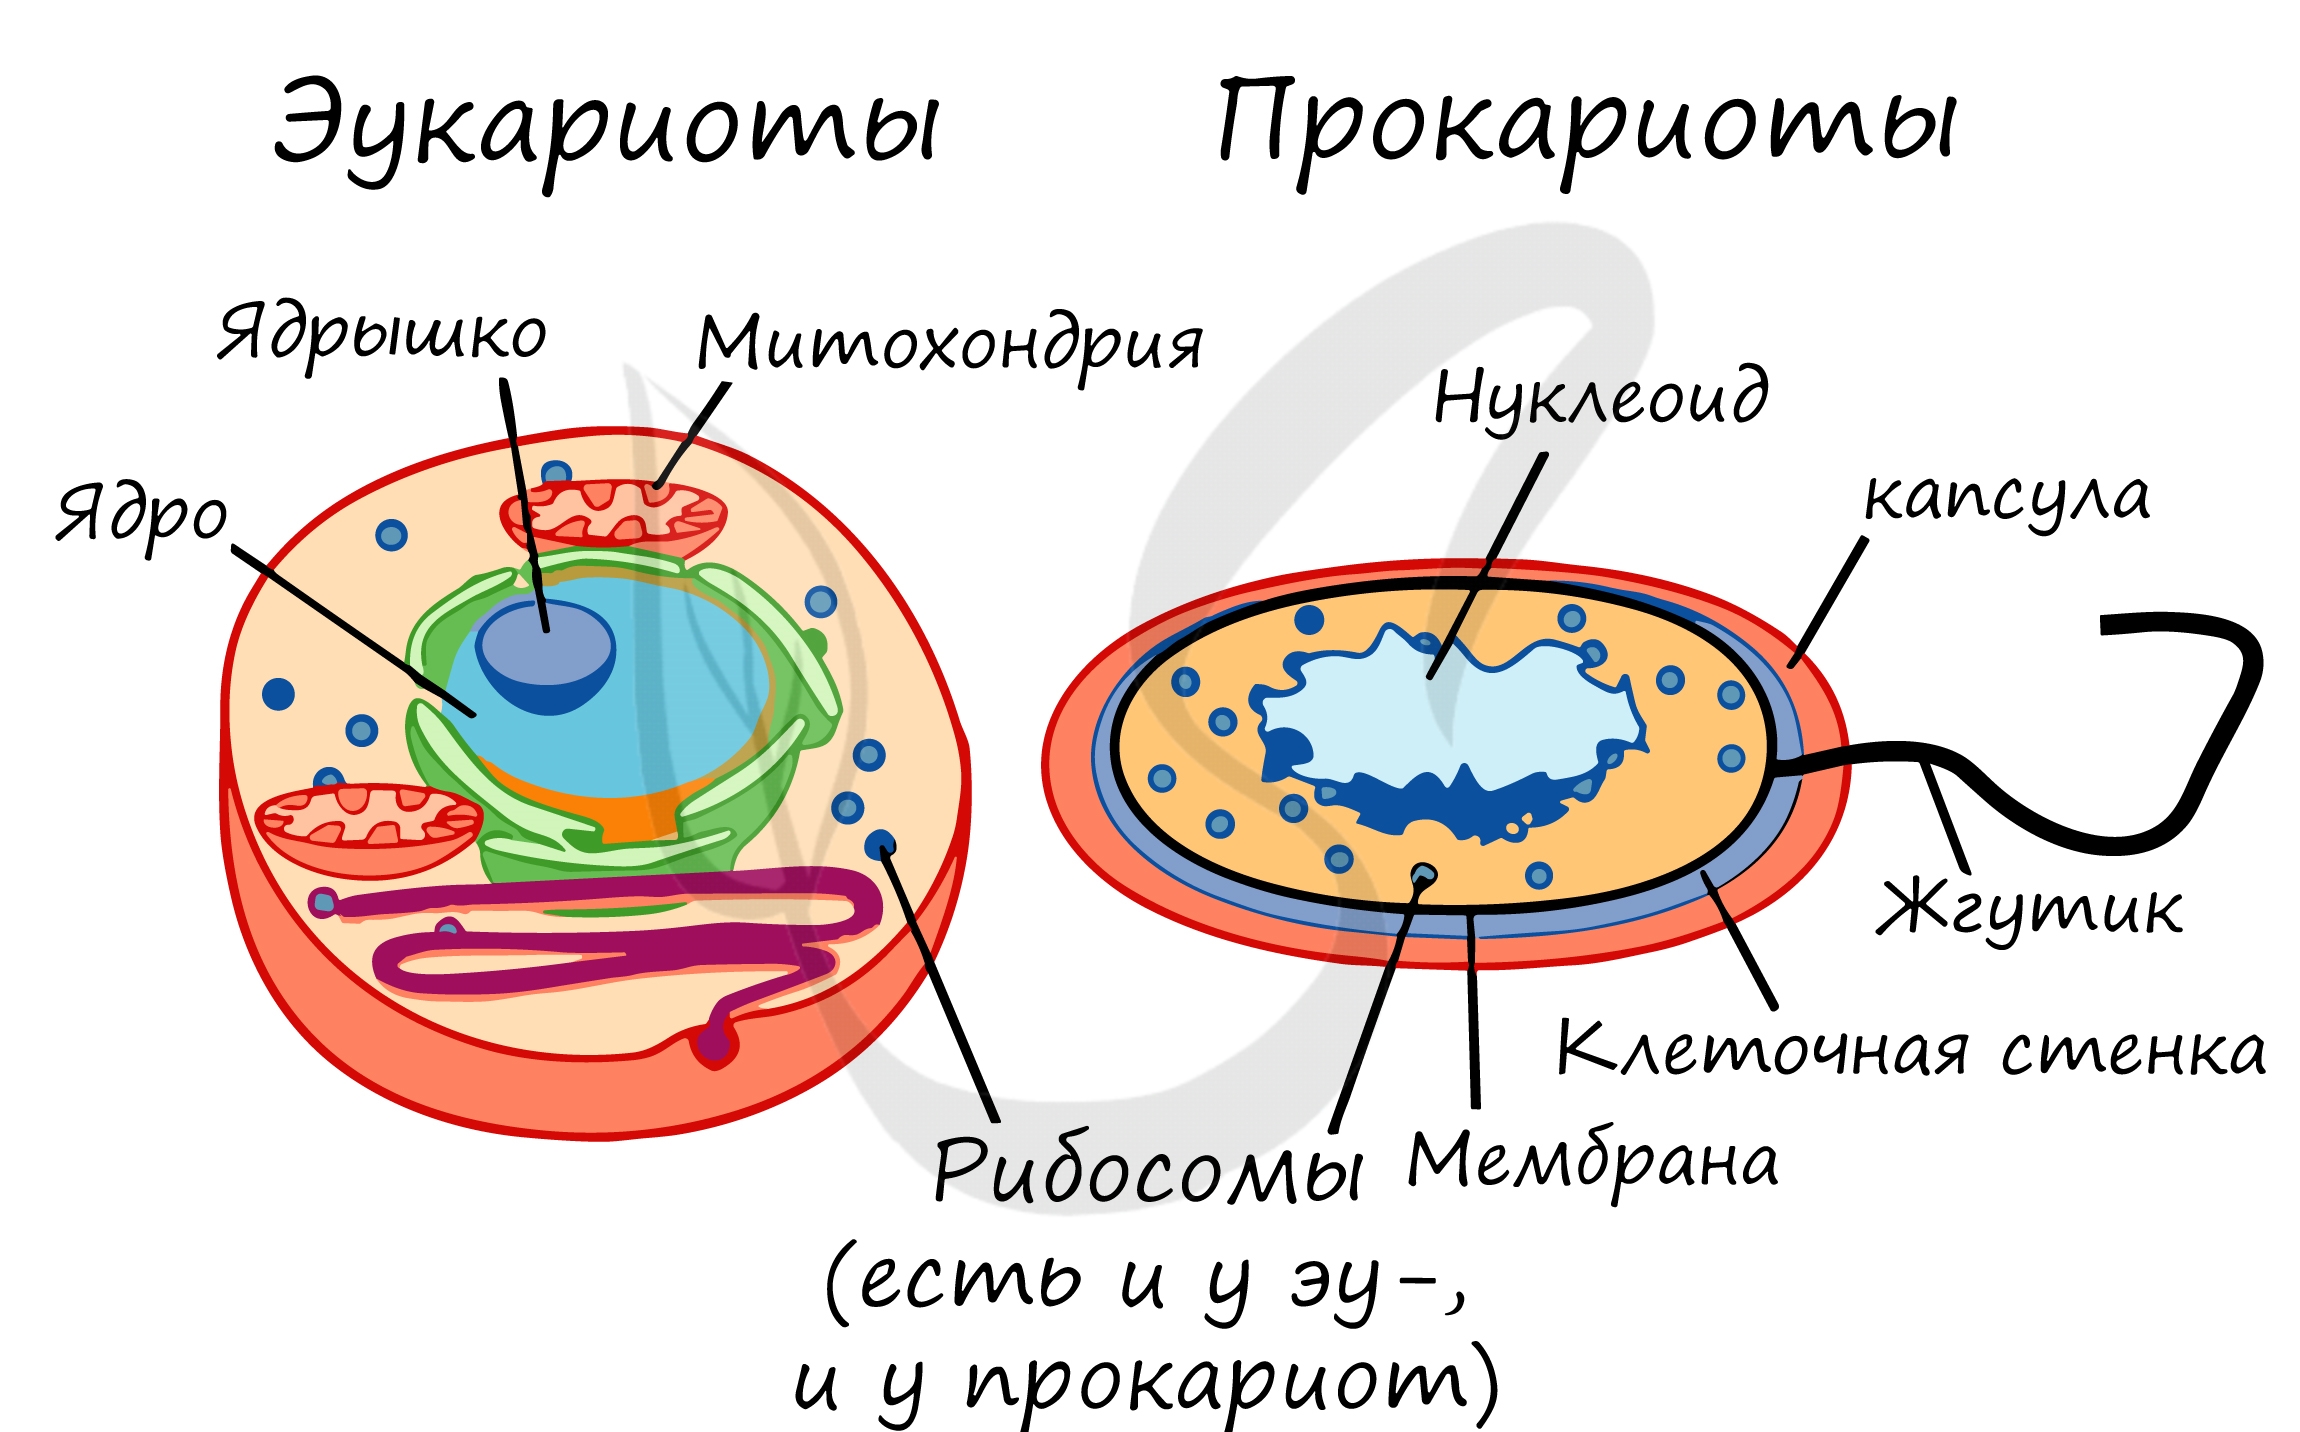 Прокариоты биология 5. Строение клетки прокариот и эукариот. Строение бактерий прокариоты и эукариоты. Отличие прокариот от эукариот рисунок. Прокариотическая клетка и эукариотическая клетка строение.